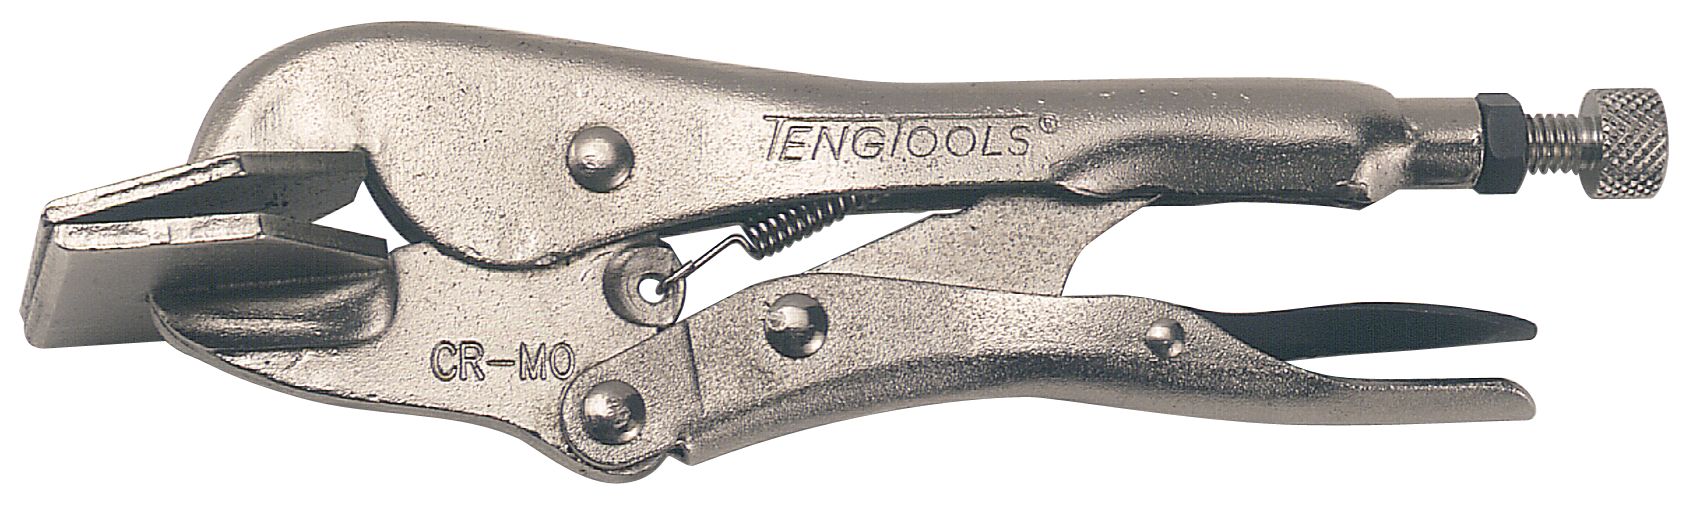 Teng Tools 408 8 Self Locking Sheet Metal Power Grip Plier 